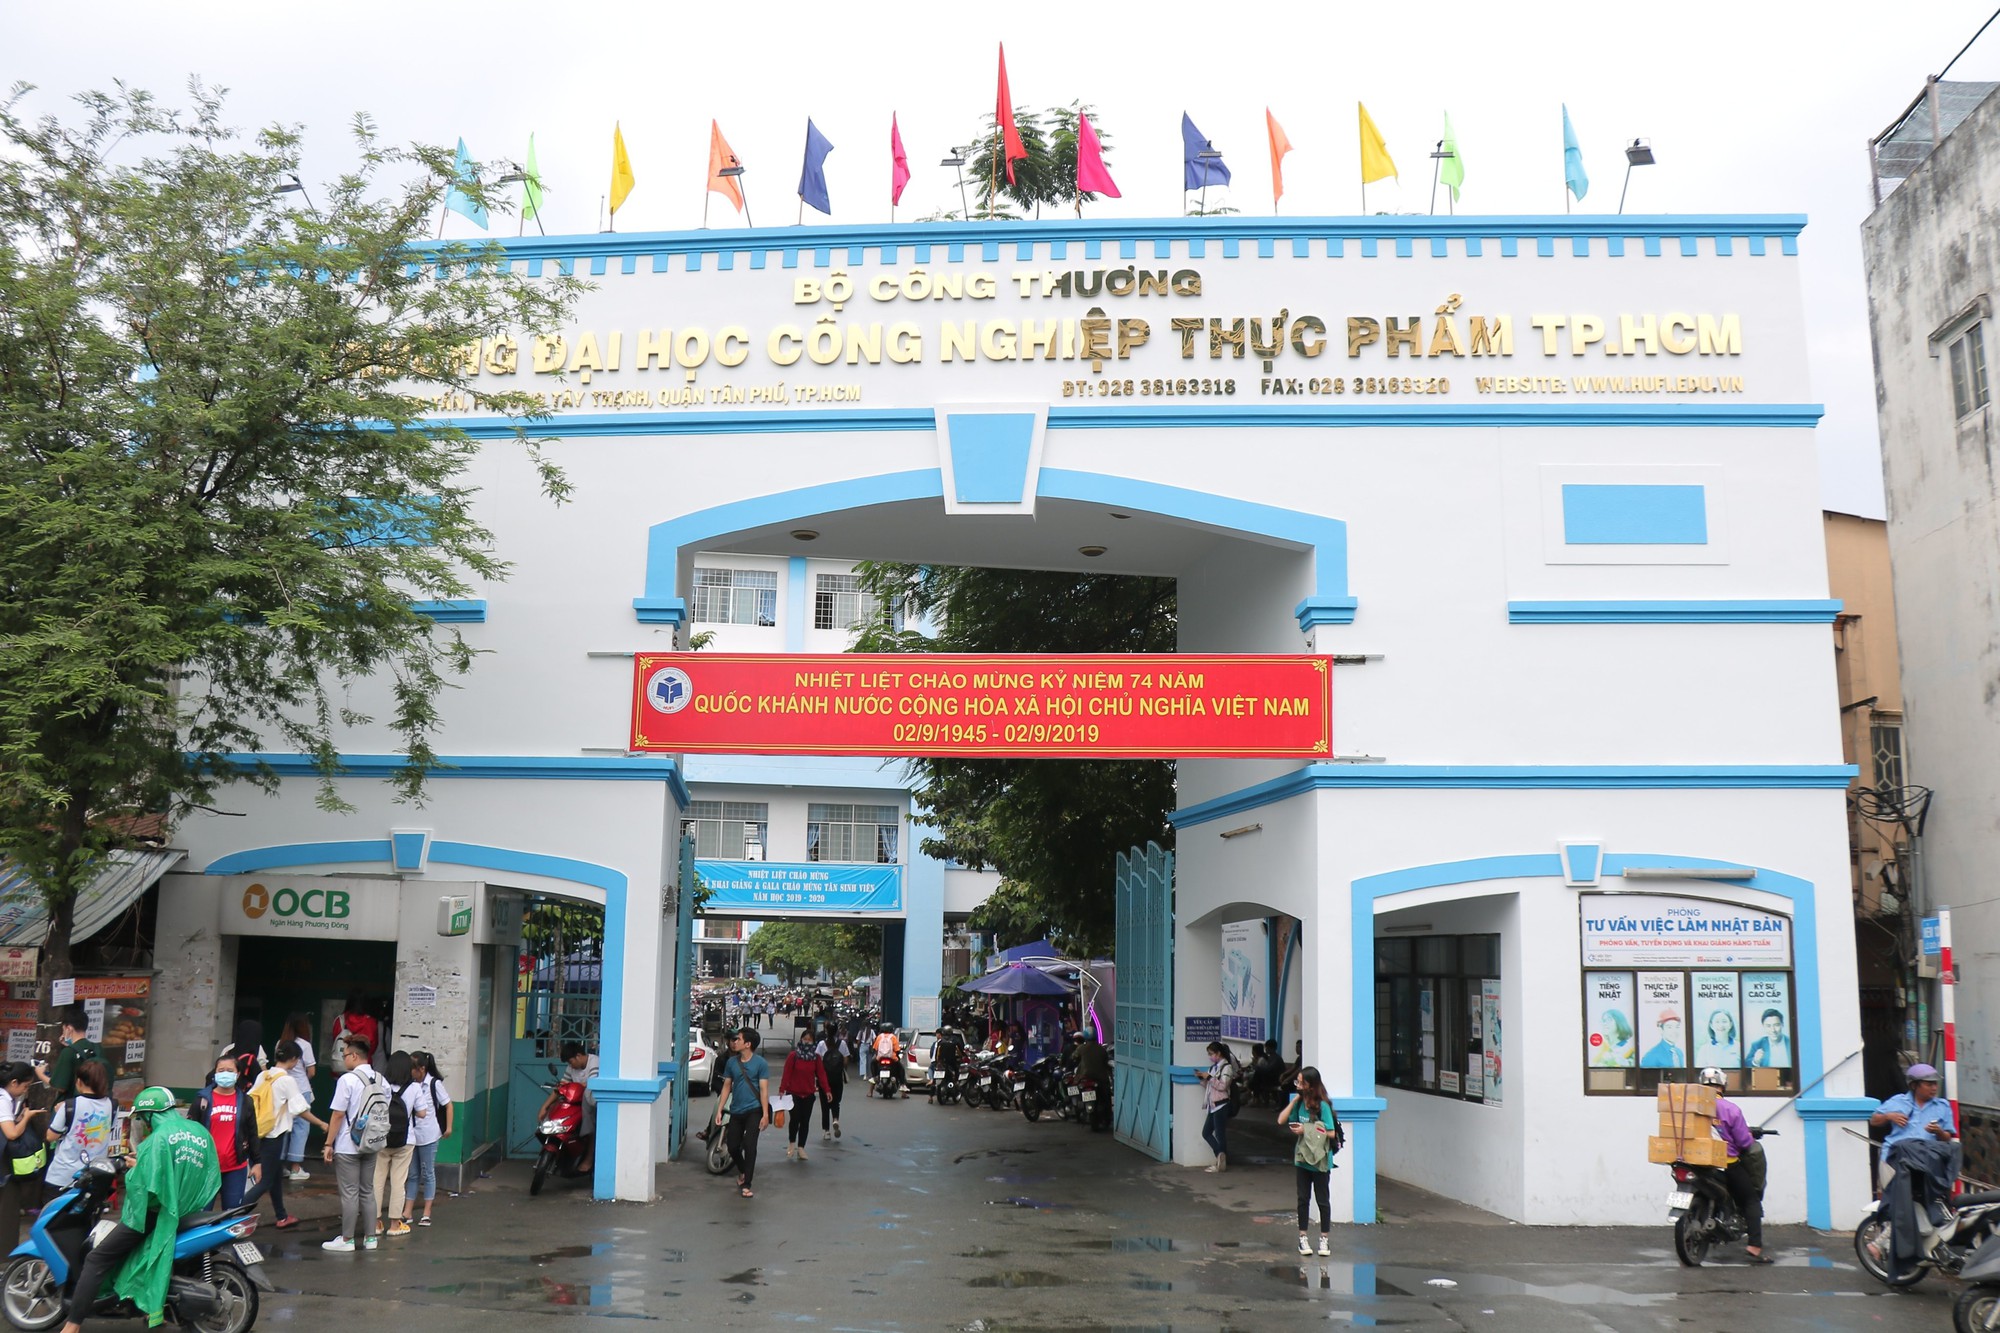 Chính thức đổi tên Trường ĐH Công nghiệp Thực phẩm TP.HCM thành Trường ĐH Công thương TP.HCM - Ảnh 1.